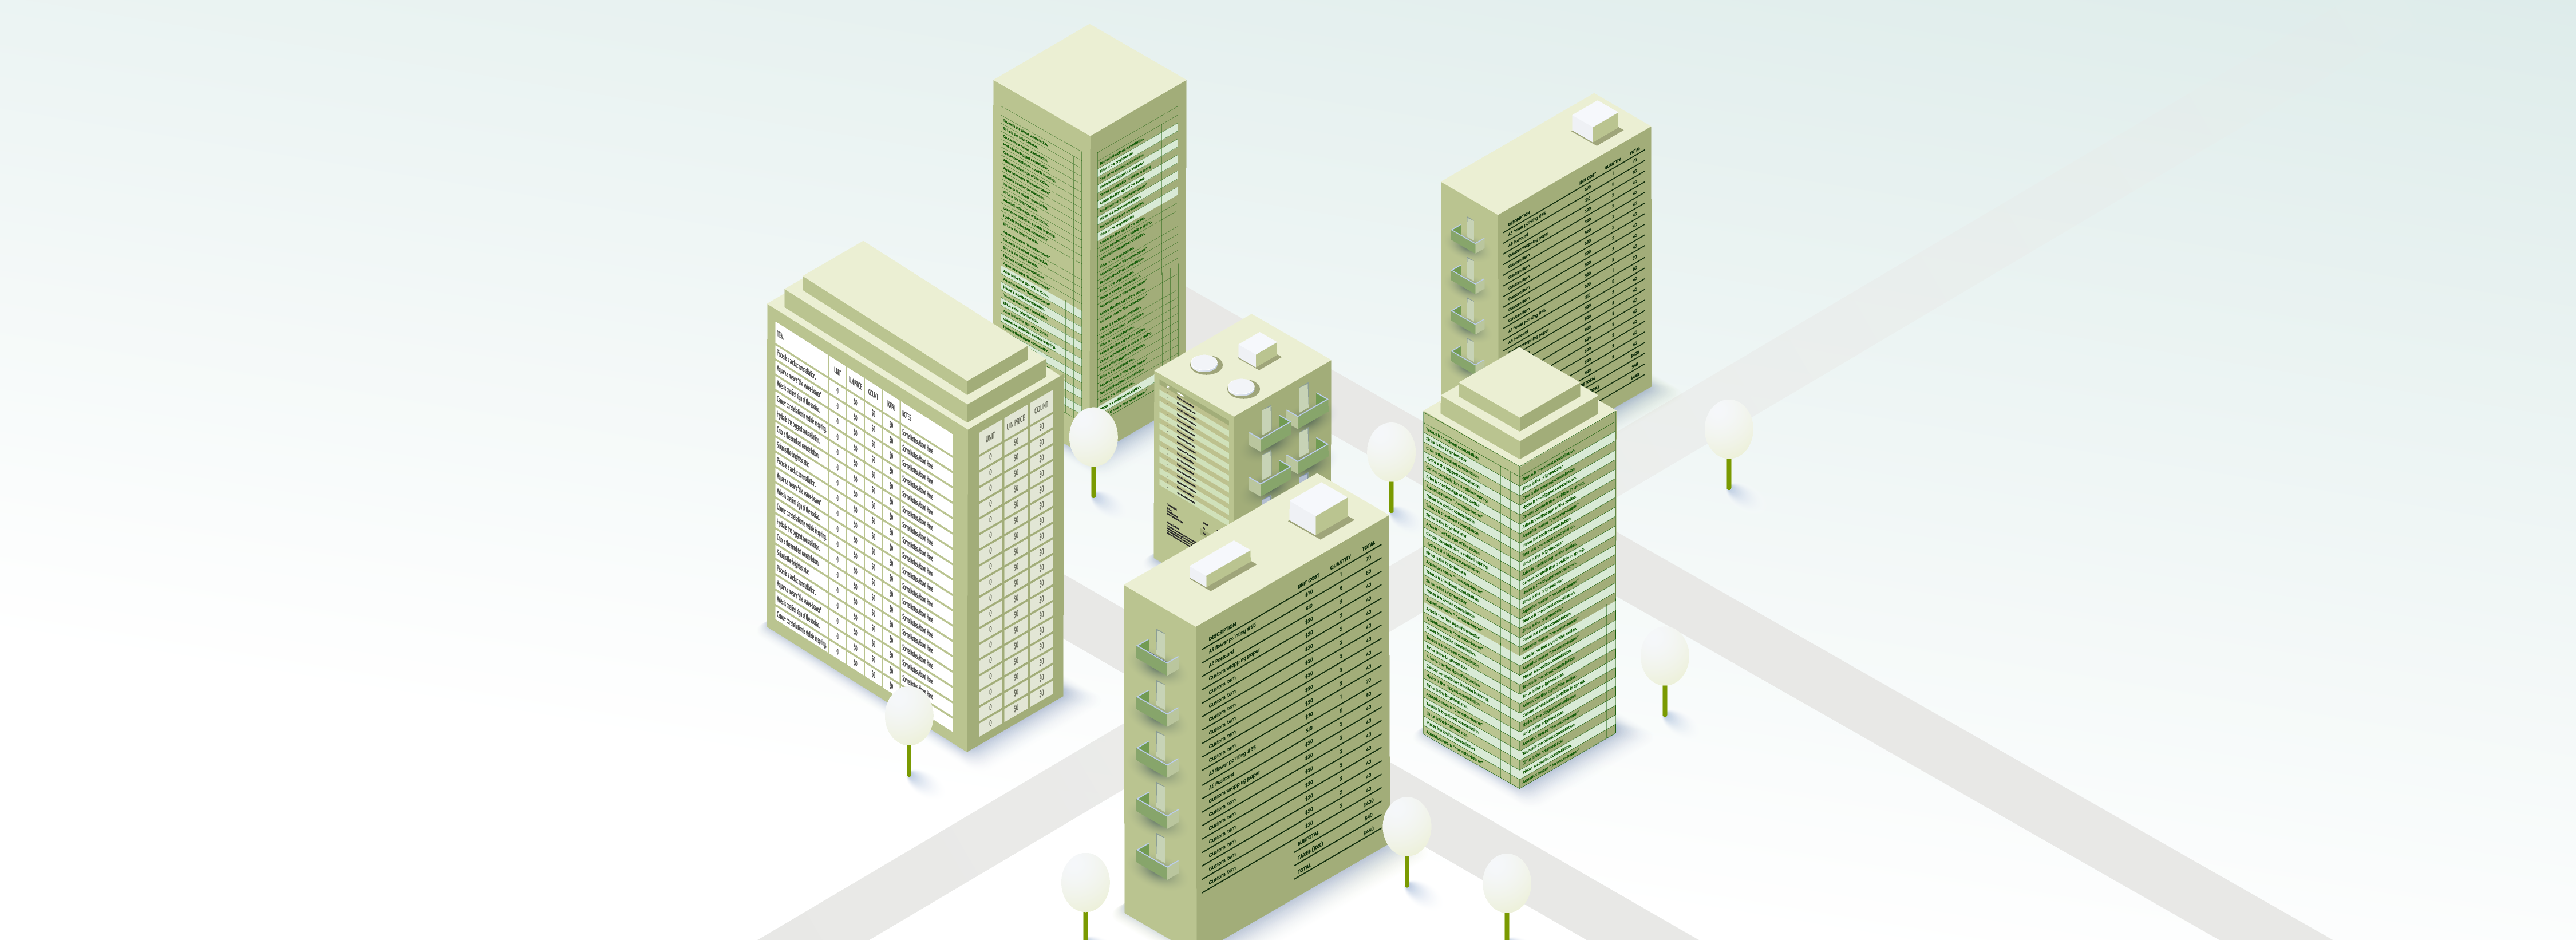 Skizze einer Stadt: Fünf Hochhäuser, die Tabellen an den Außenwänden haben; einige Straßen und Bäume.